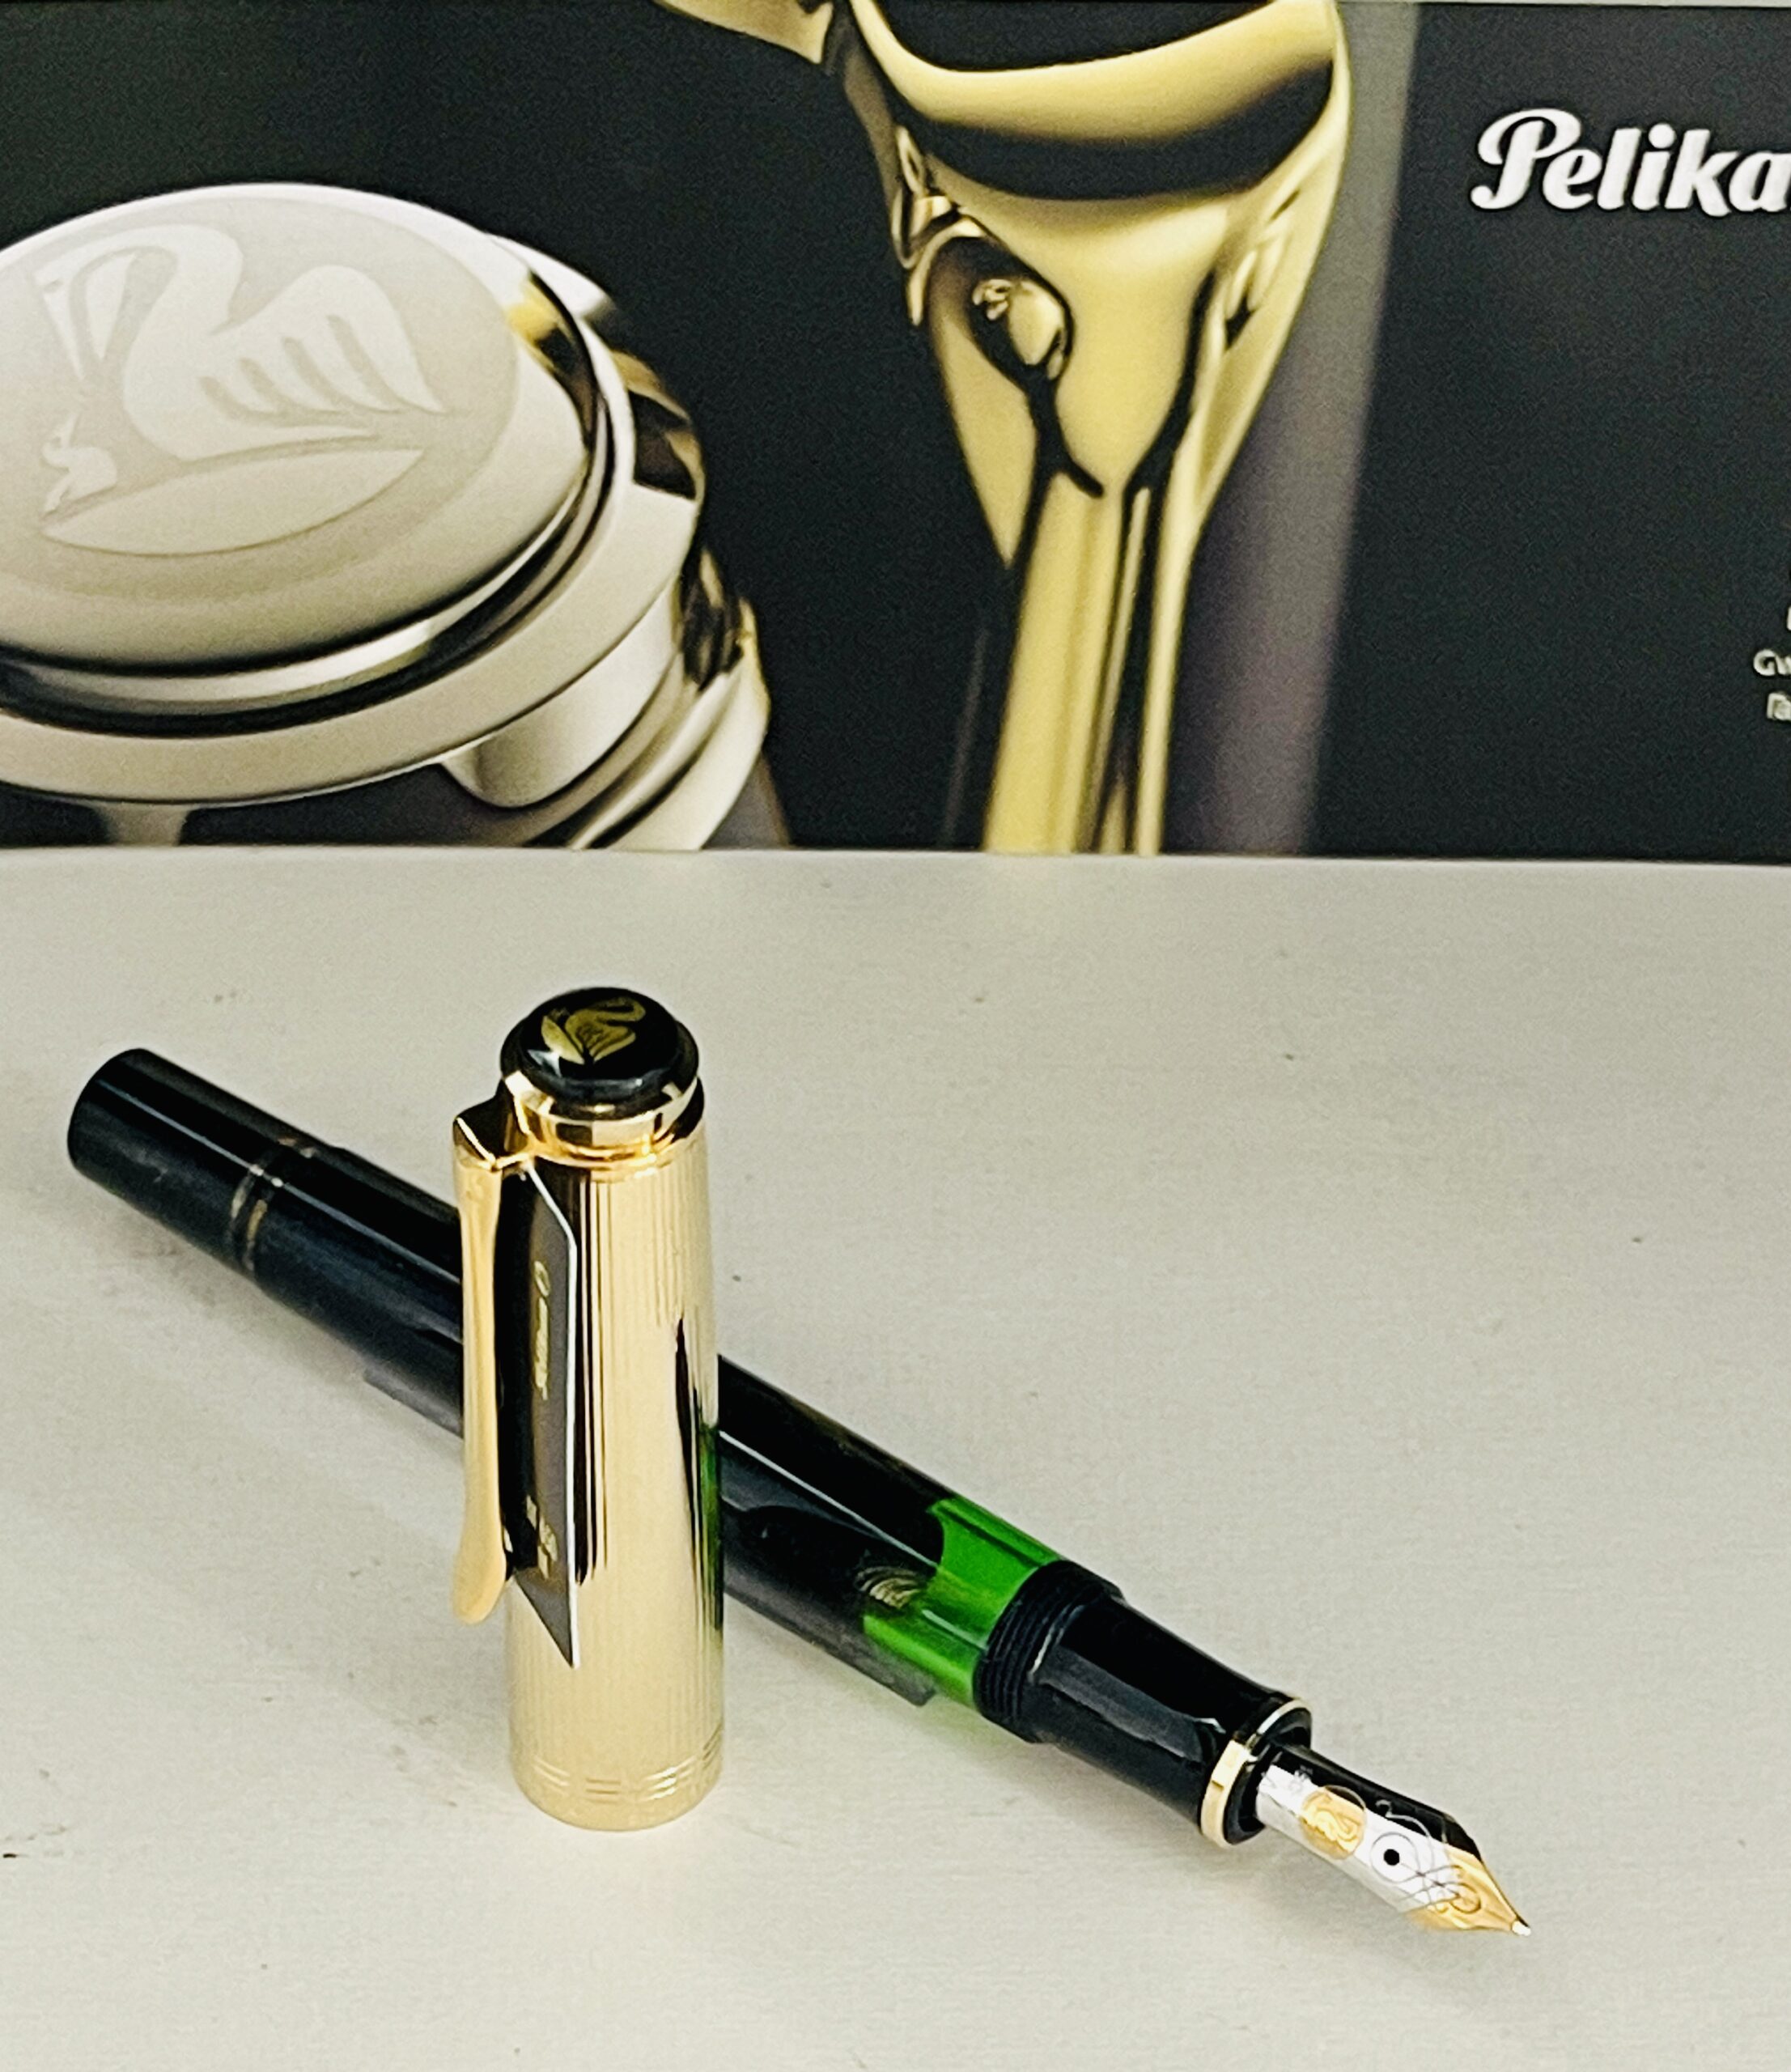 Penna Stilografica Pelikan M 650 Vermeille - Le Penne di Nello